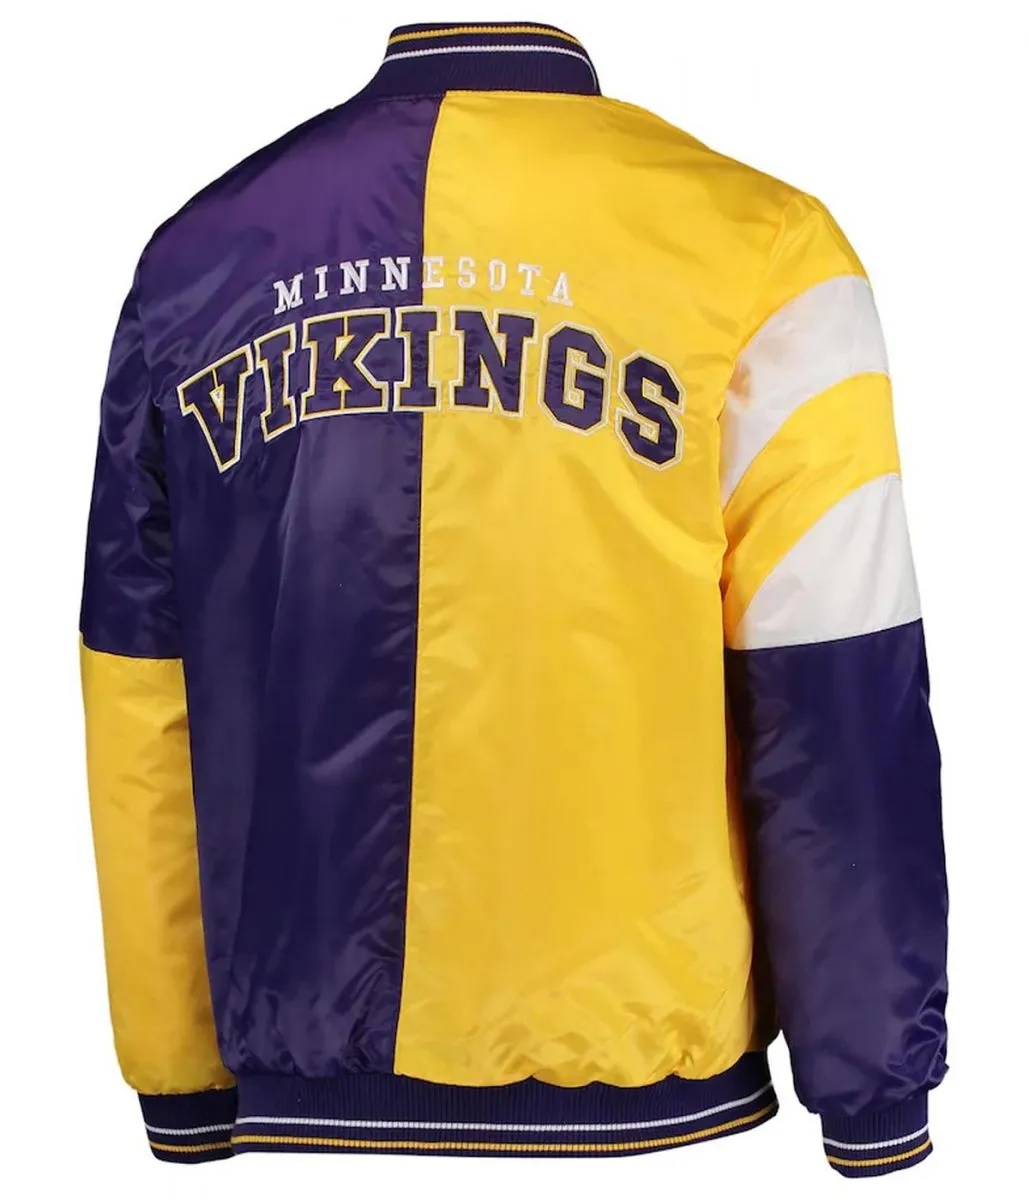 Minnesota Vikings Leader Yellow and Purple Jacket